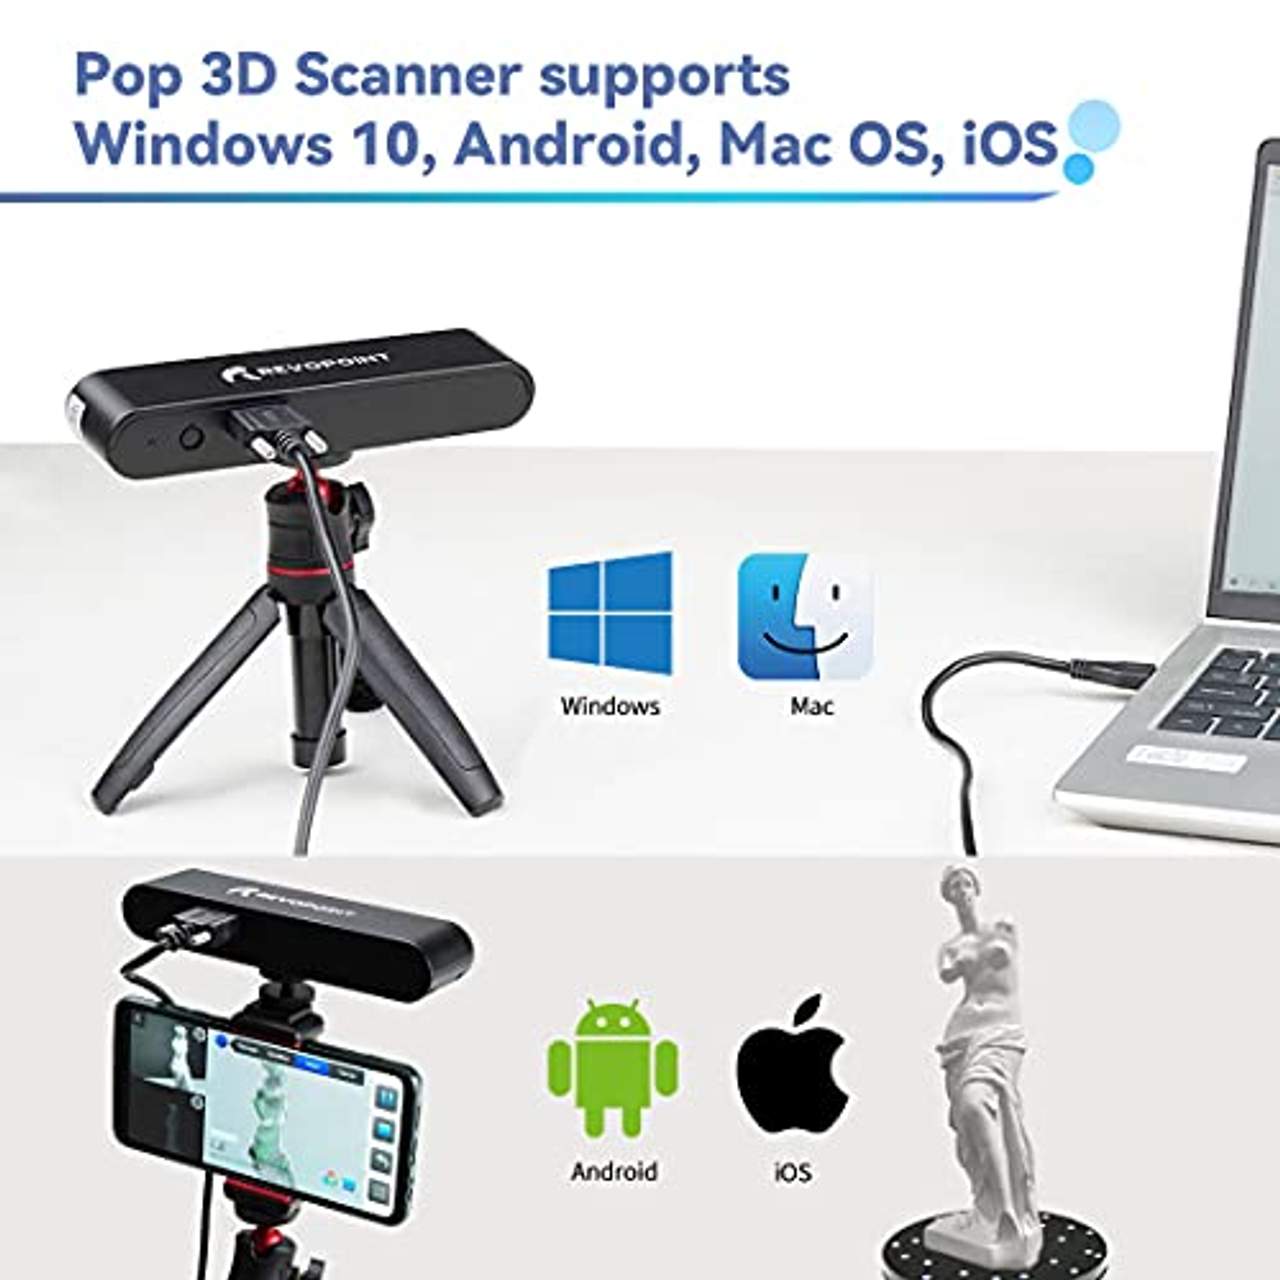 Revopoint POP 3D-Scanner 0,3mm Genauigkeit 8fps Desktop- und Handheld-Scanner